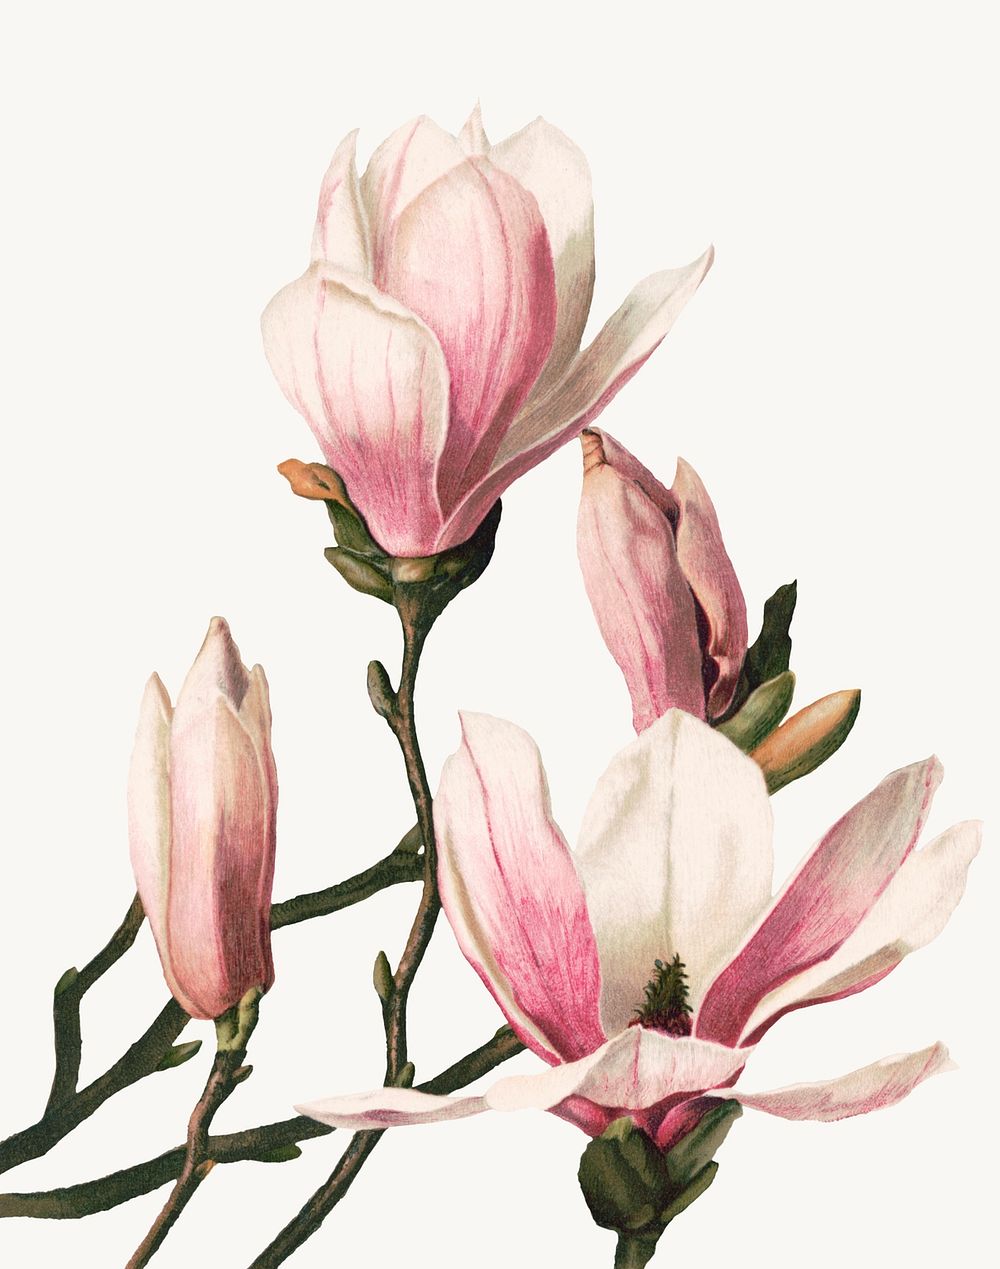 Vintage magnolia flower botanical illustration psd, remix from artworks by L. Prang & Co.